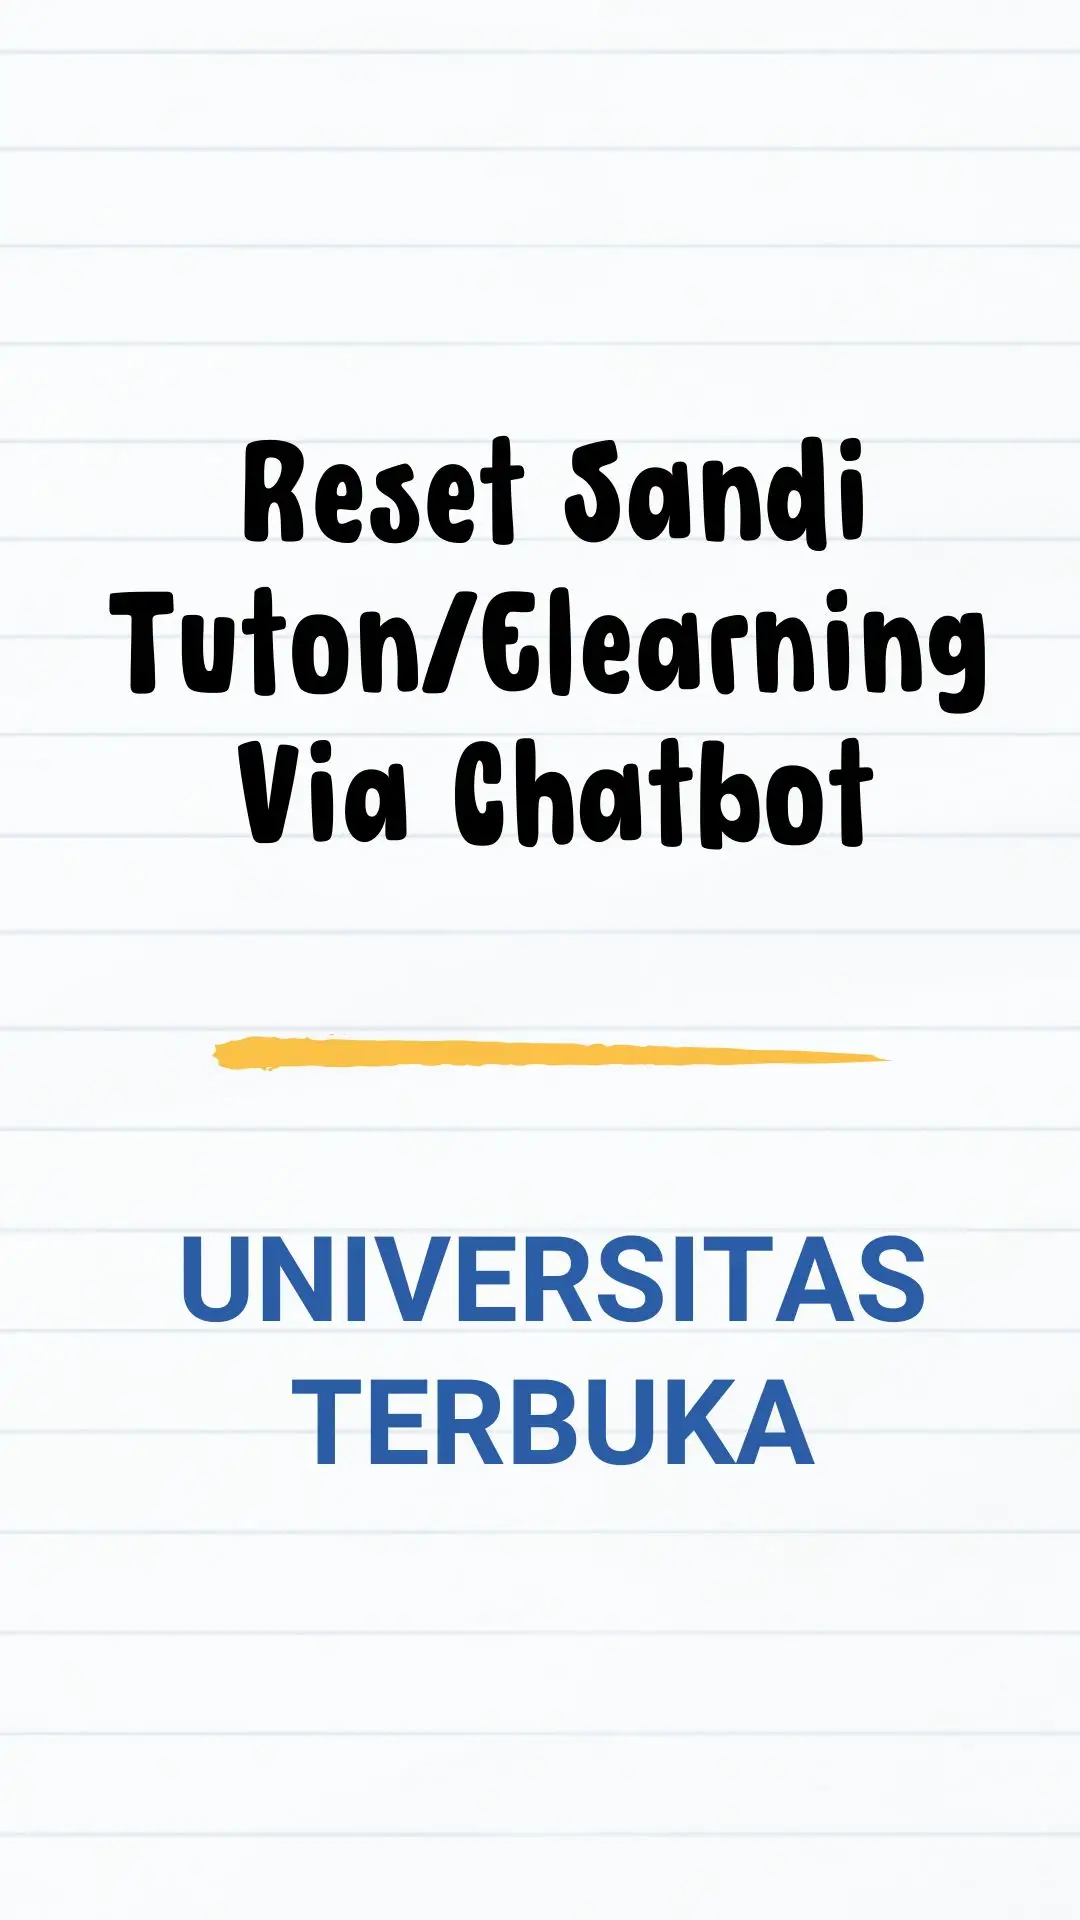 #universitasterbuka #ut #tuton